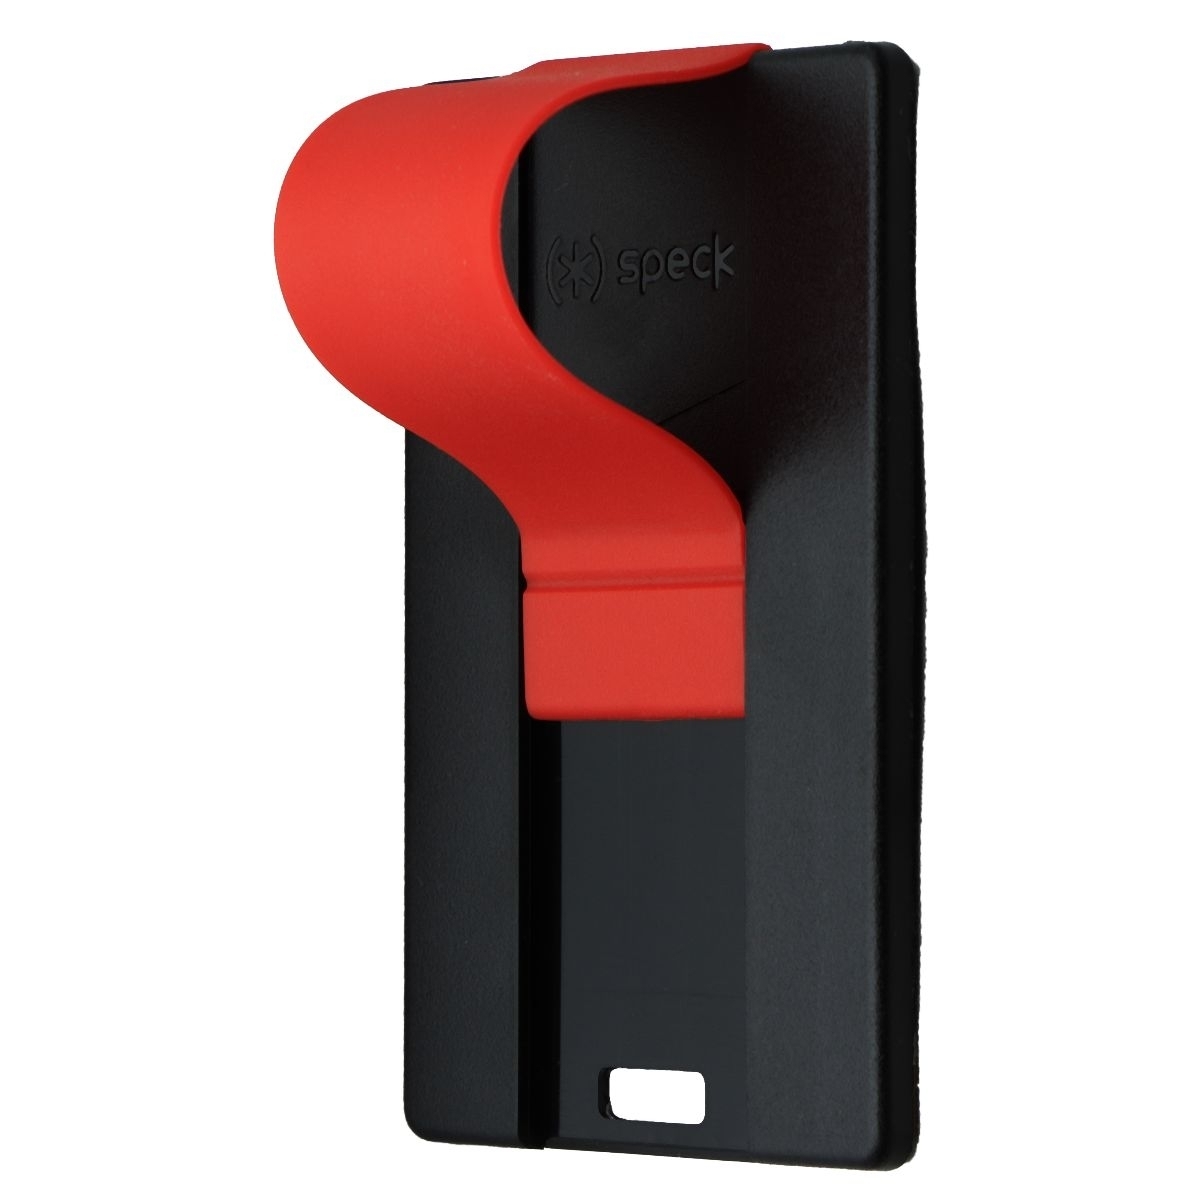 Speck GrabTab Slide/Grip/Stand Holder For Smartphone Cases - Black/Red (Refurbished)